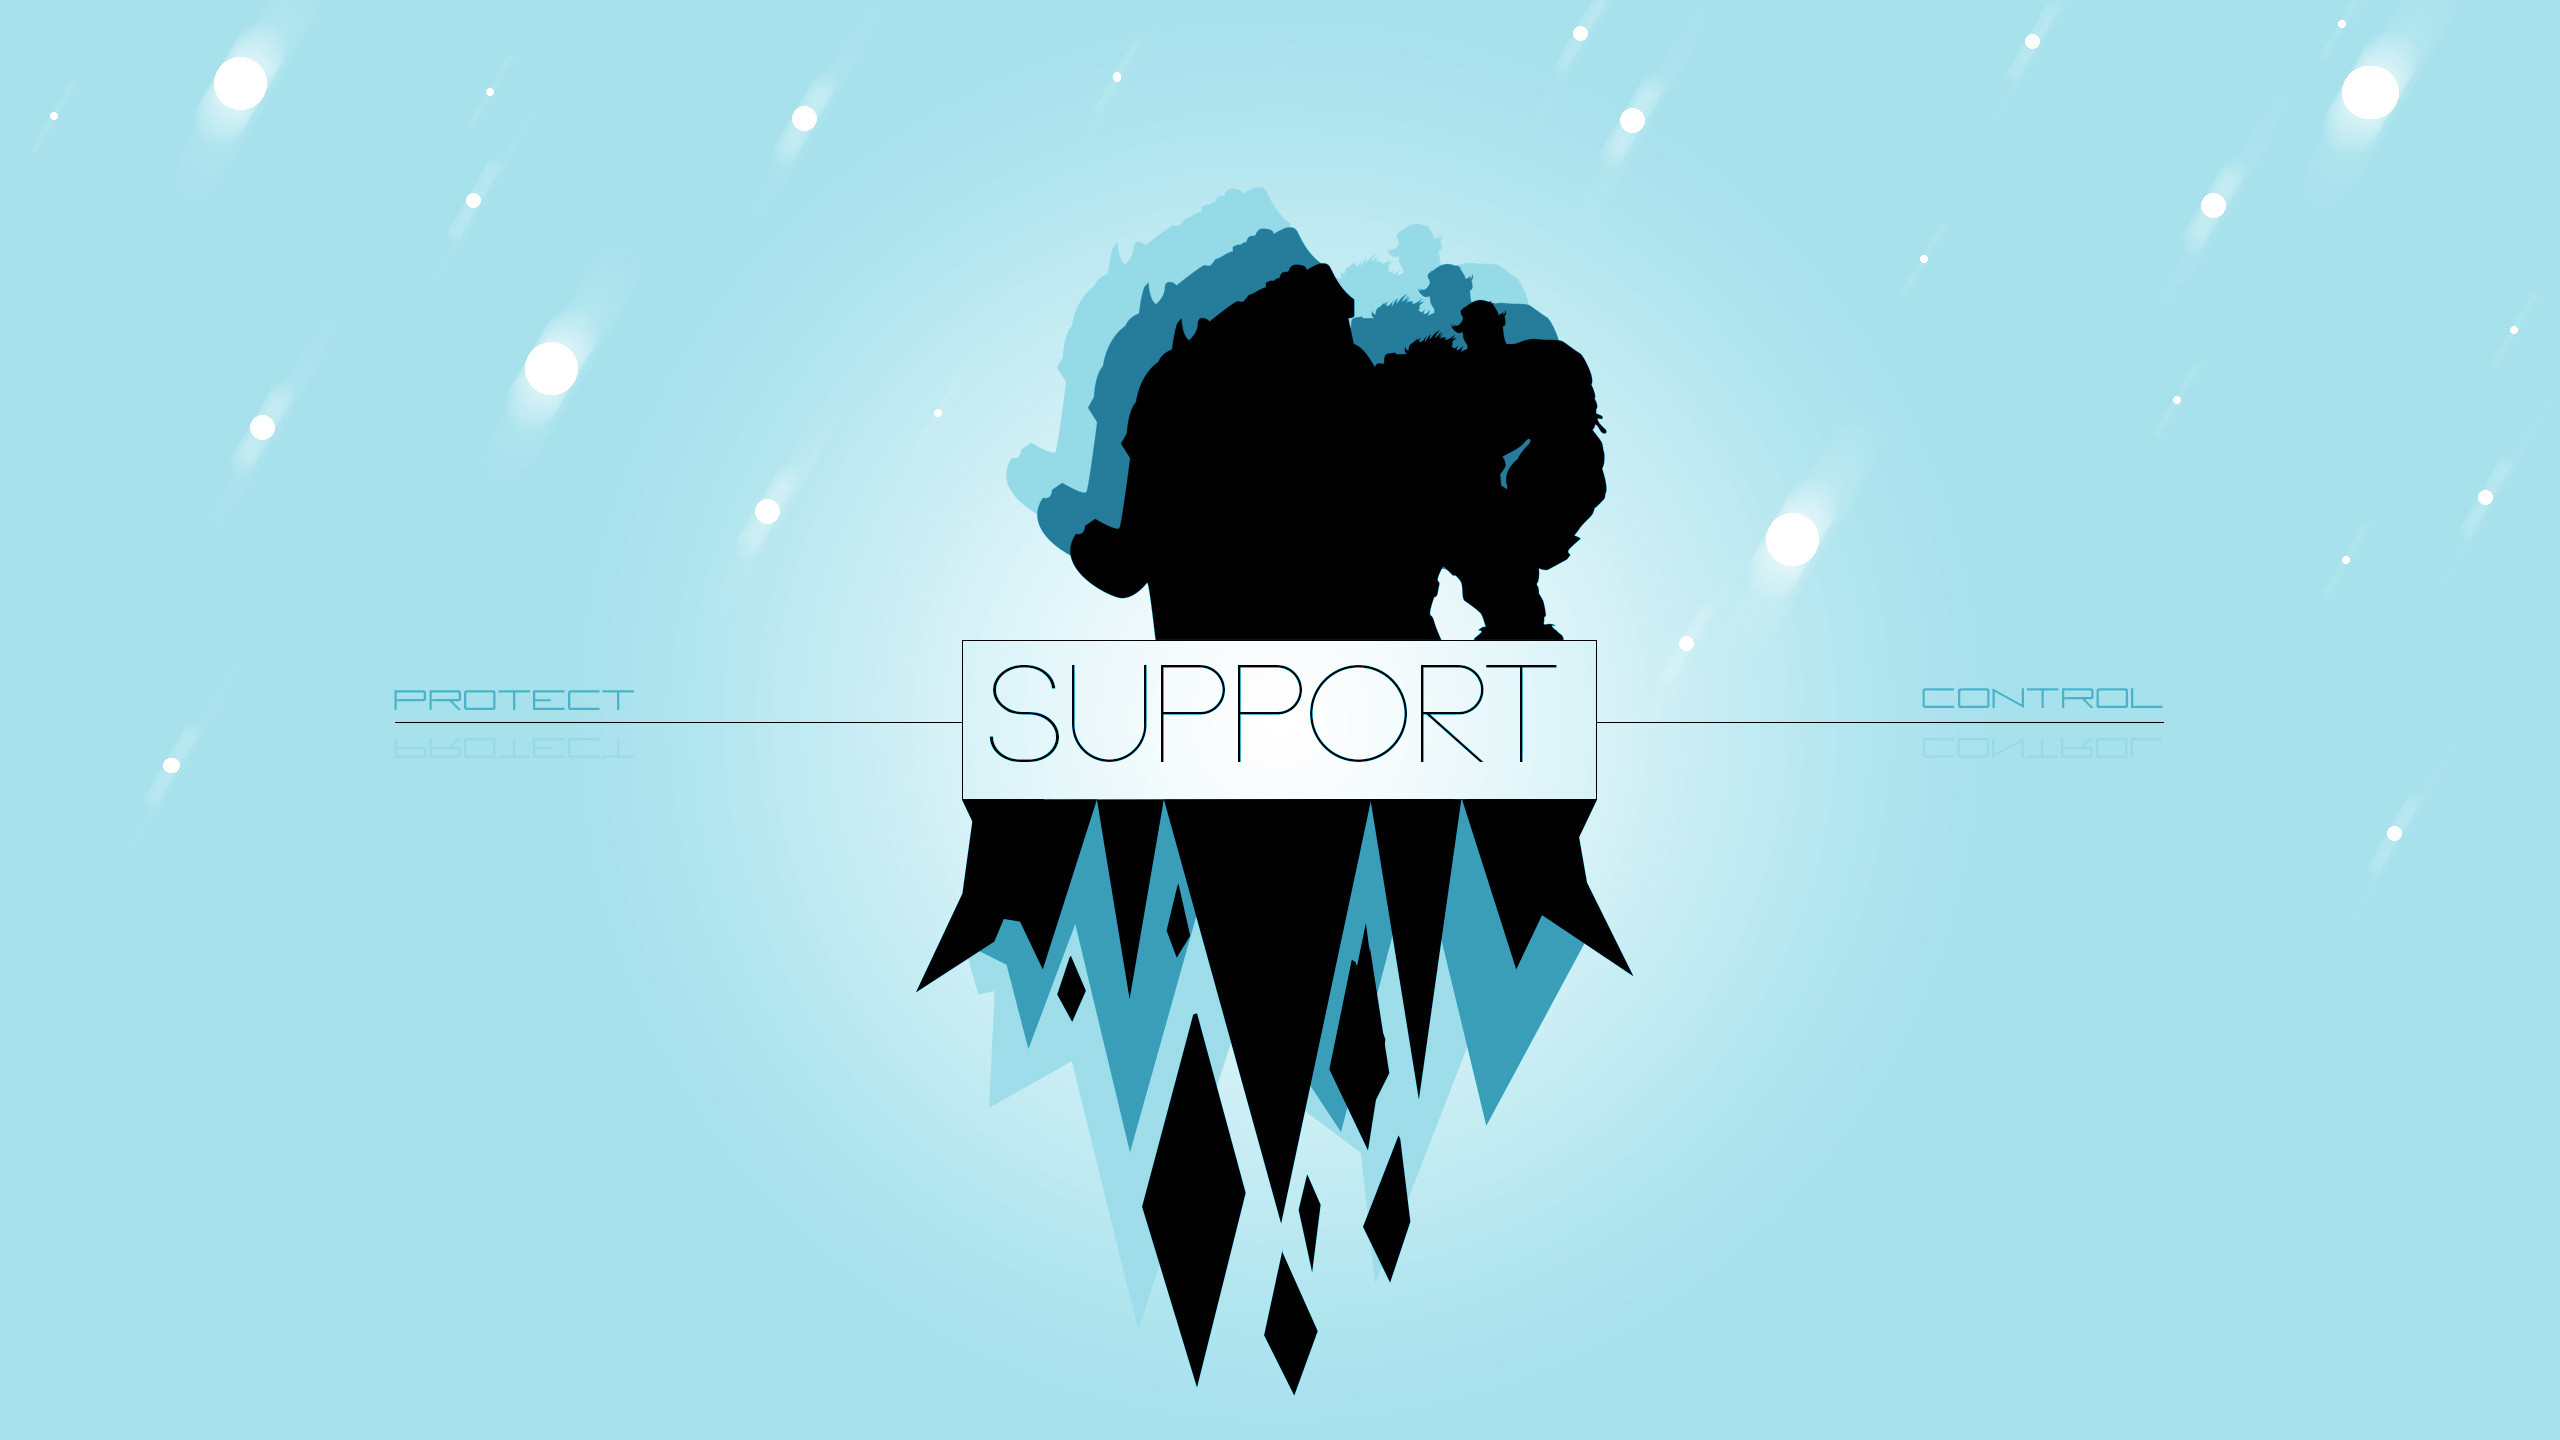 2560x1440 Support by Aynoe (2) HD Wallpaper Fan Art Artwork League of Legends lol